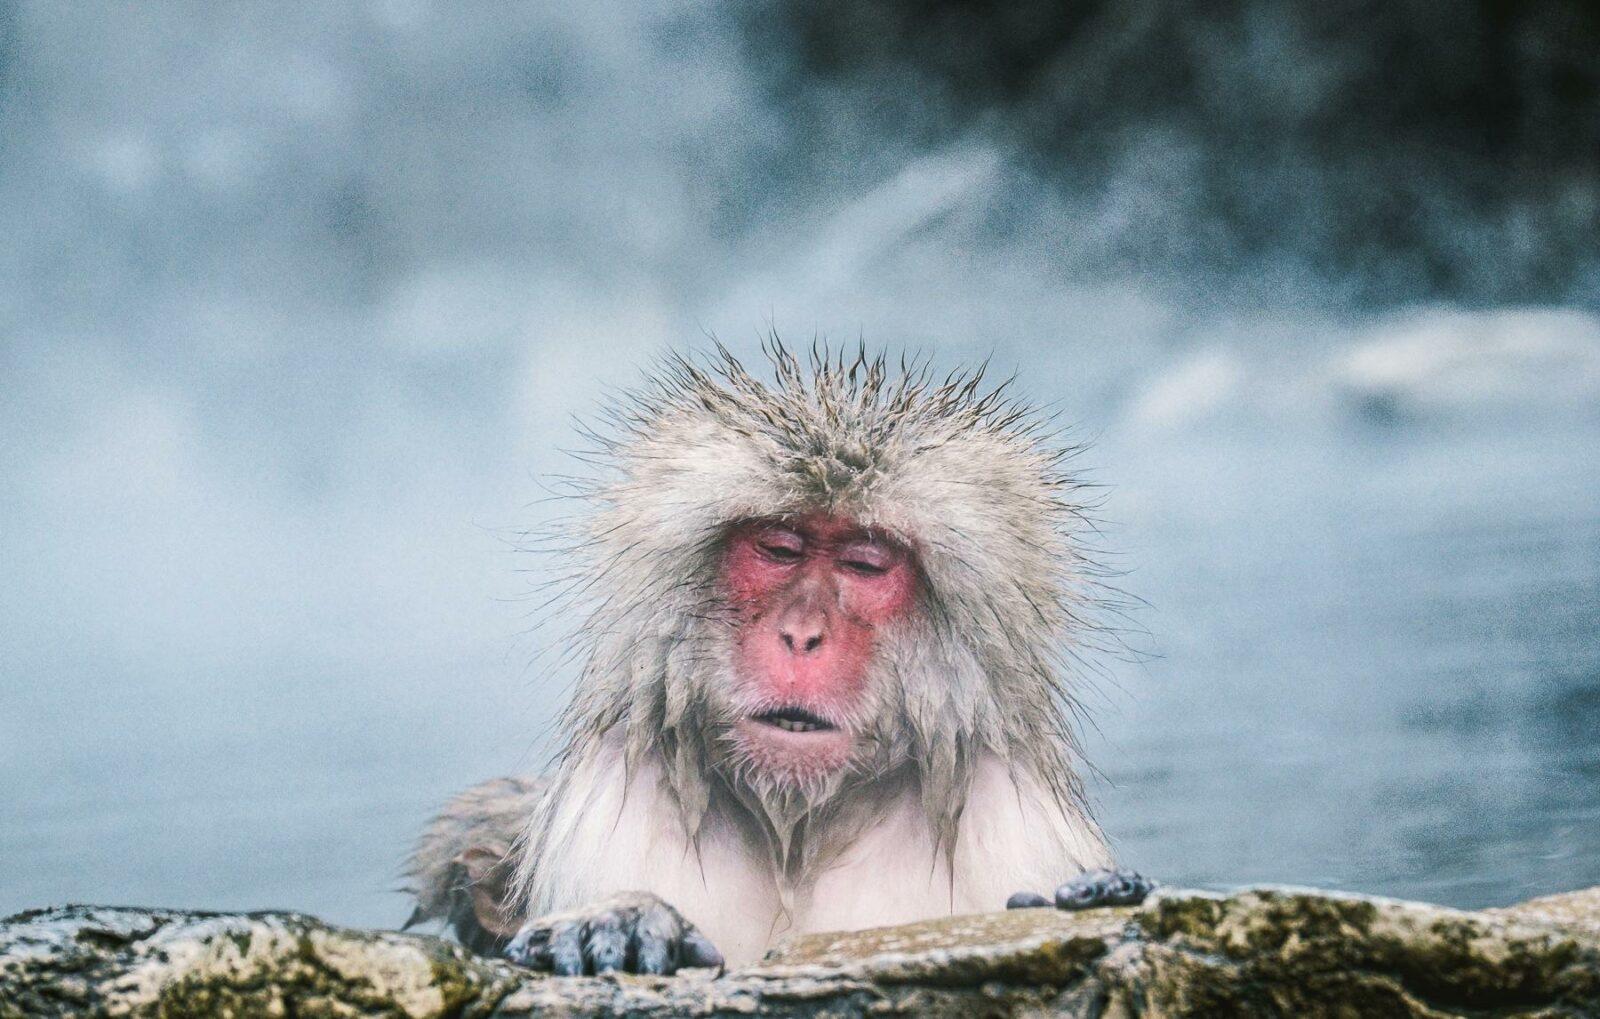 japan snow monkey photo tour